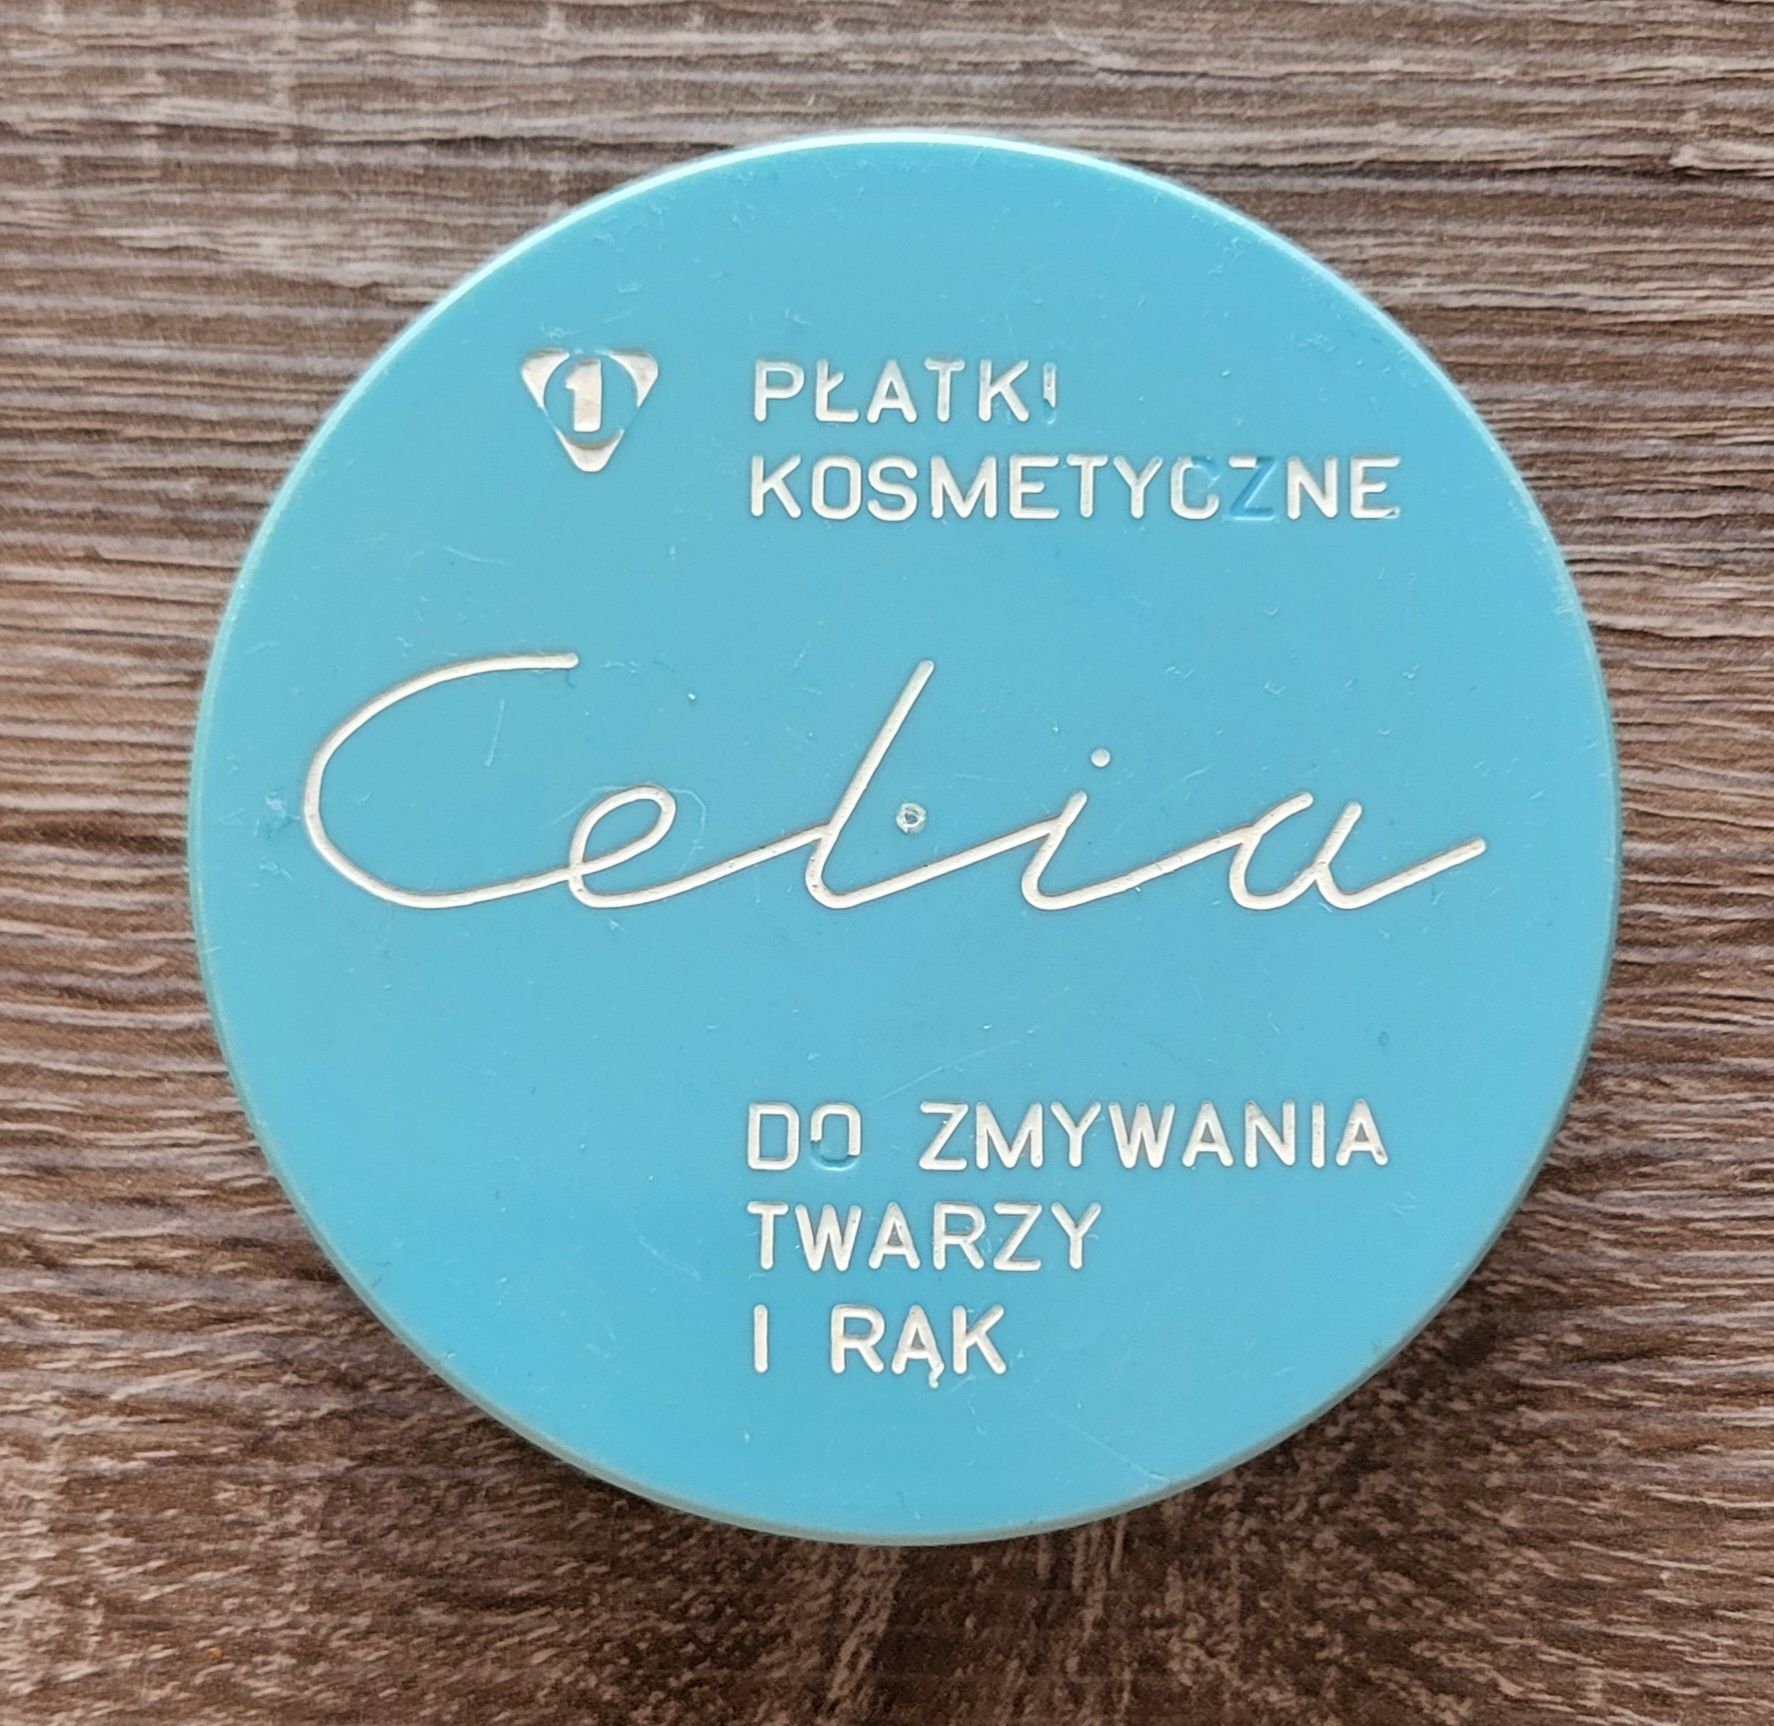 Celia Płatki Kosmetyczne Pudełko PRL Vintage Retro